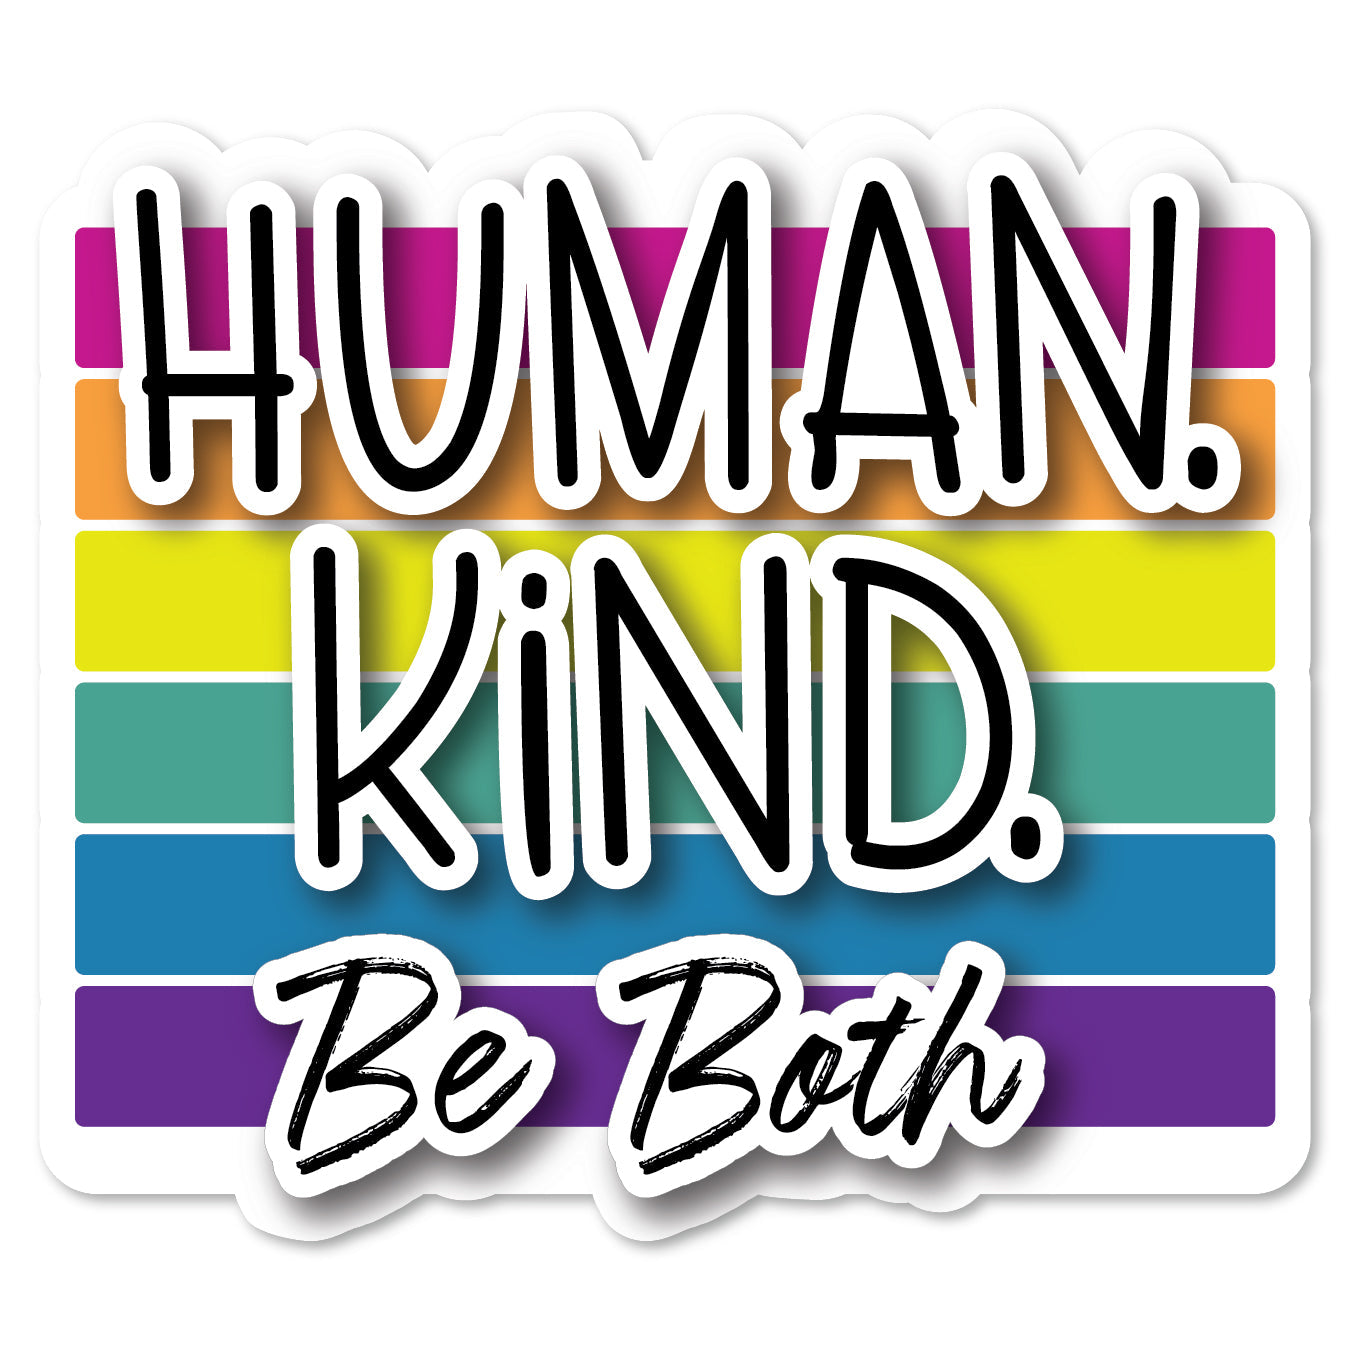 KC5-101 | Human Kind Be Both